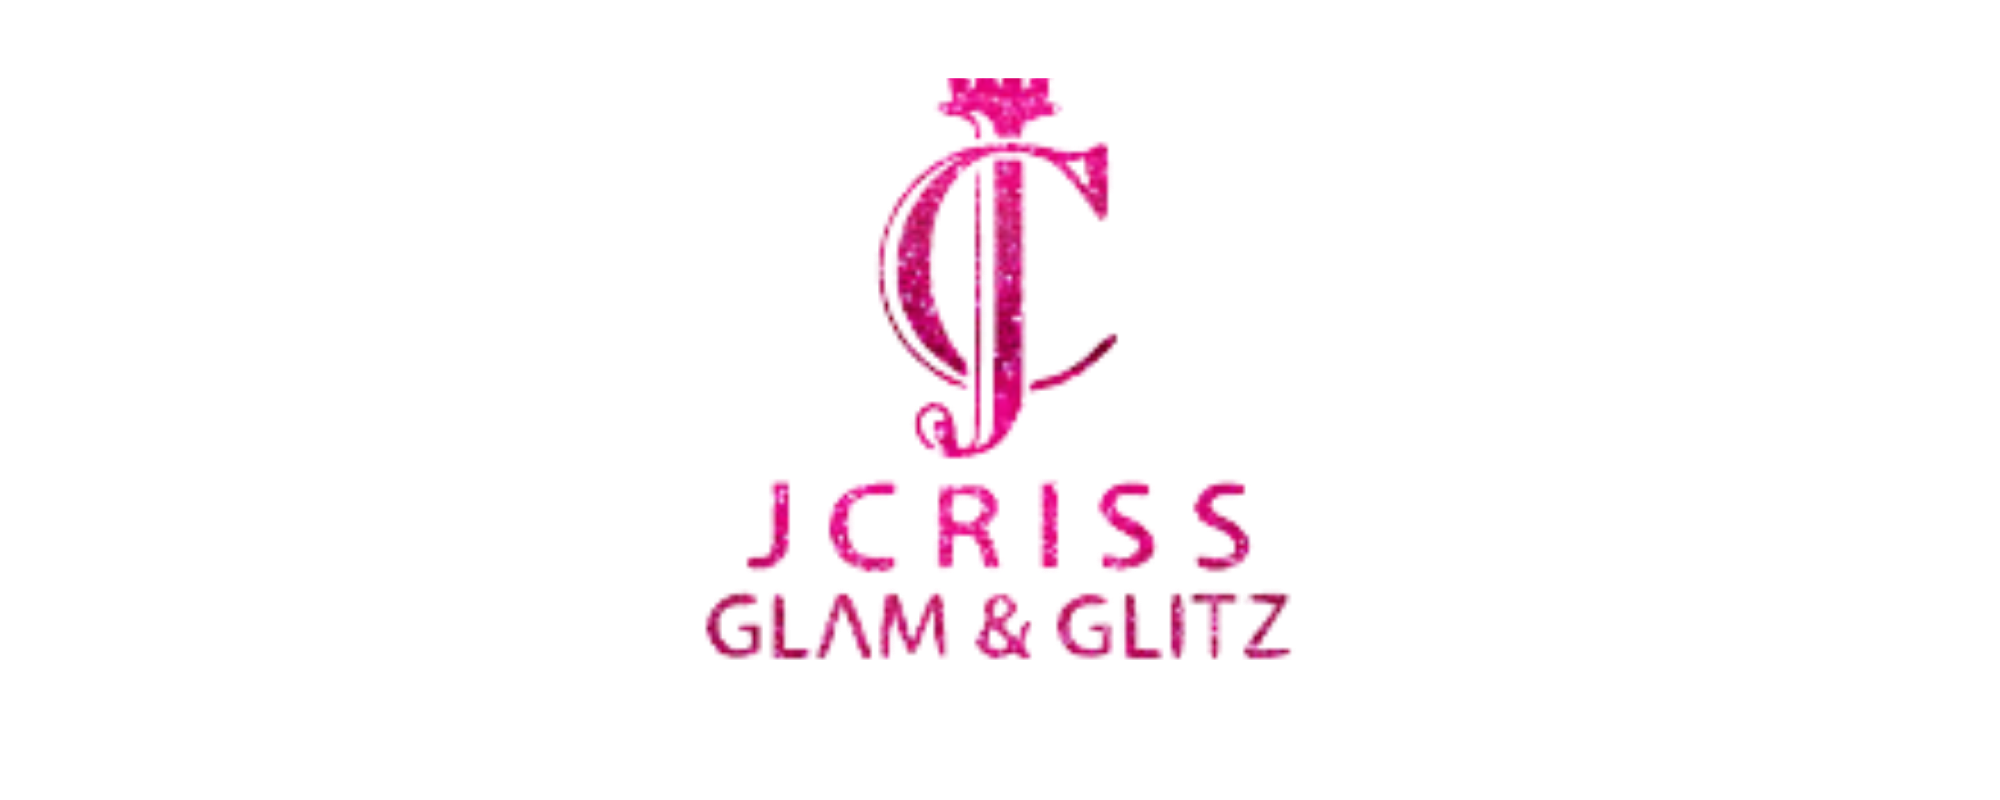 JCriss Glam & Glitz